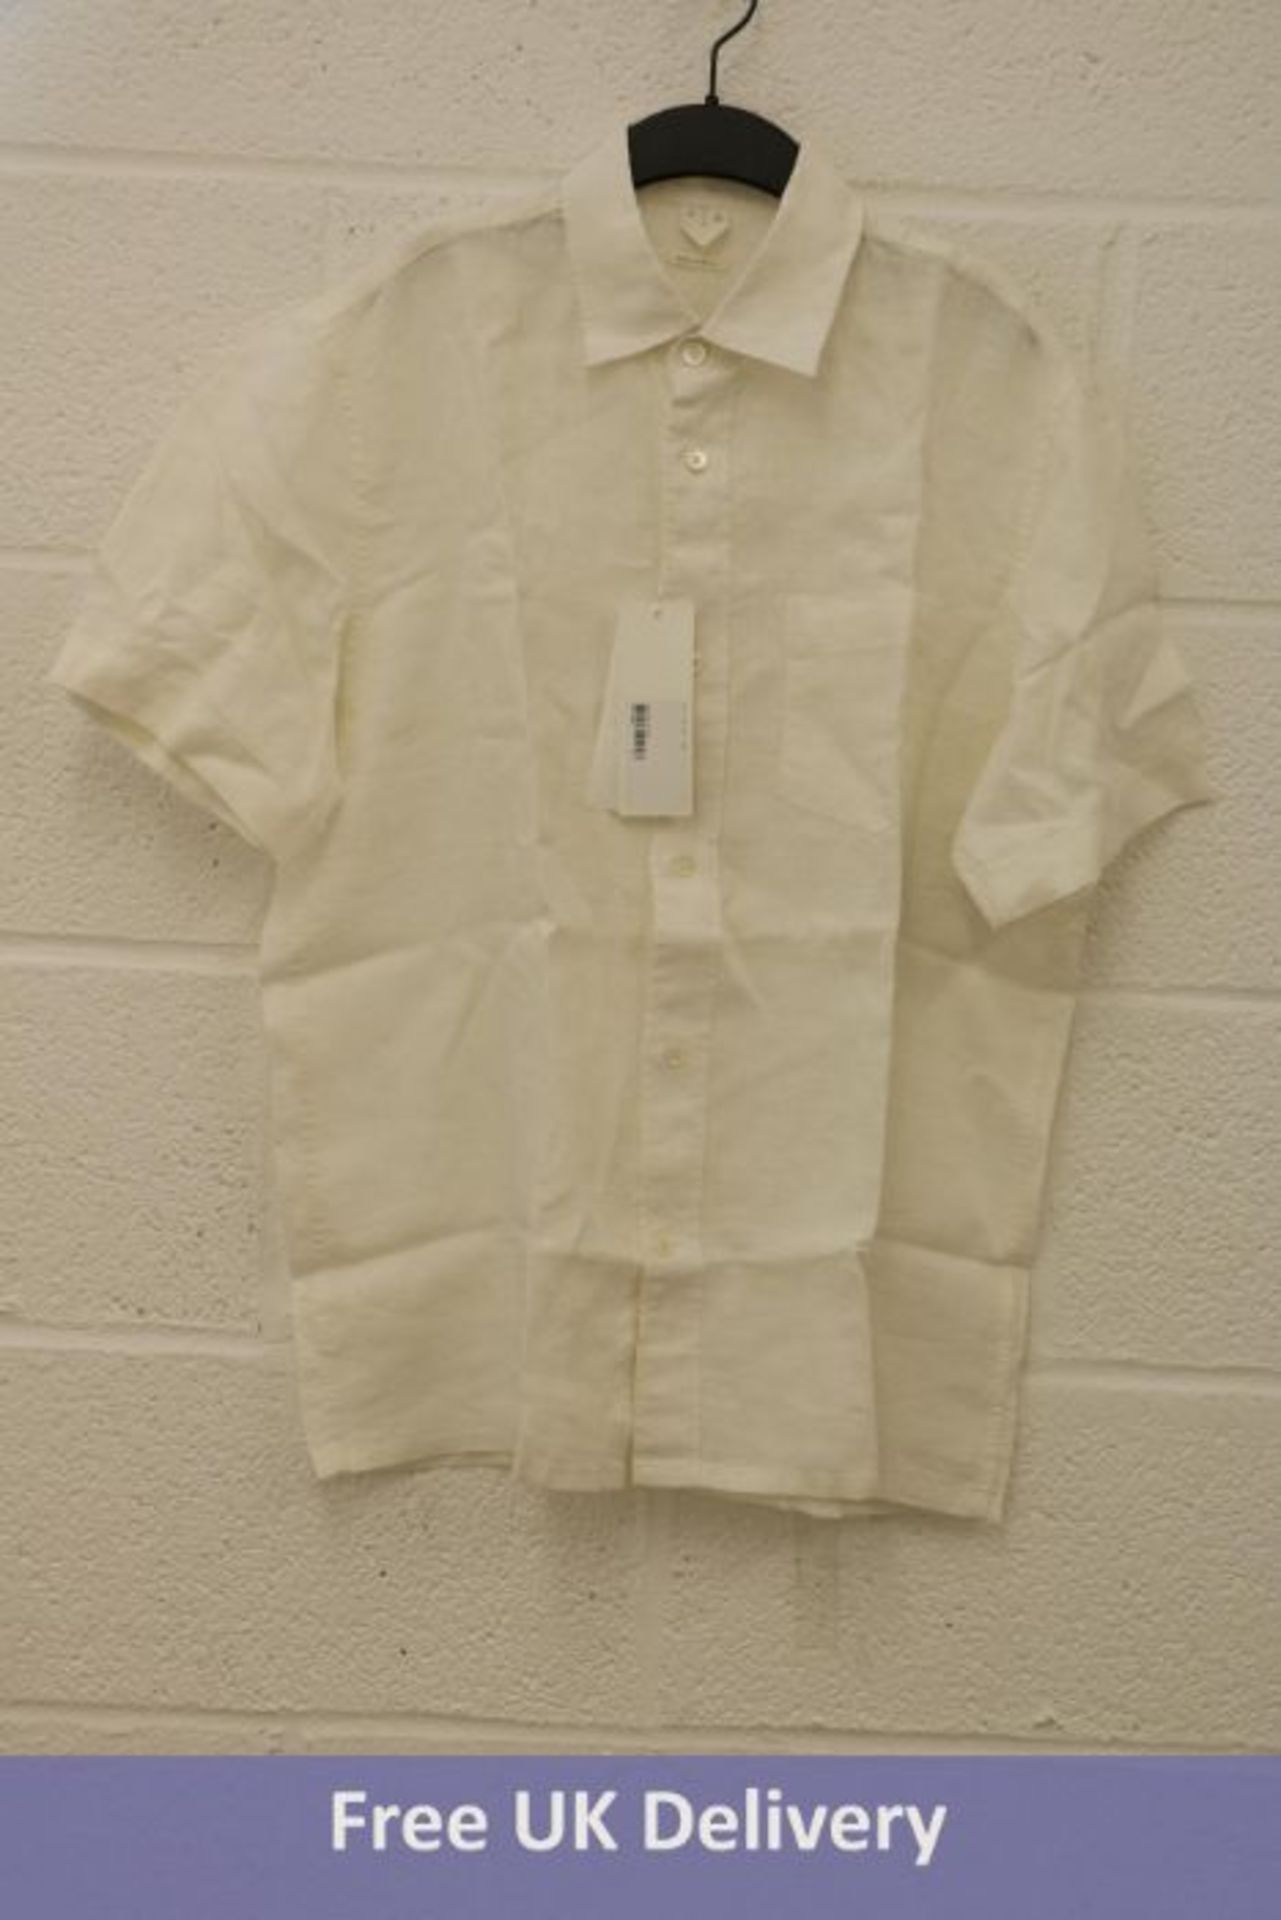 Arket Men's Short-Sleeved Kiben Shirt, White, Size 44